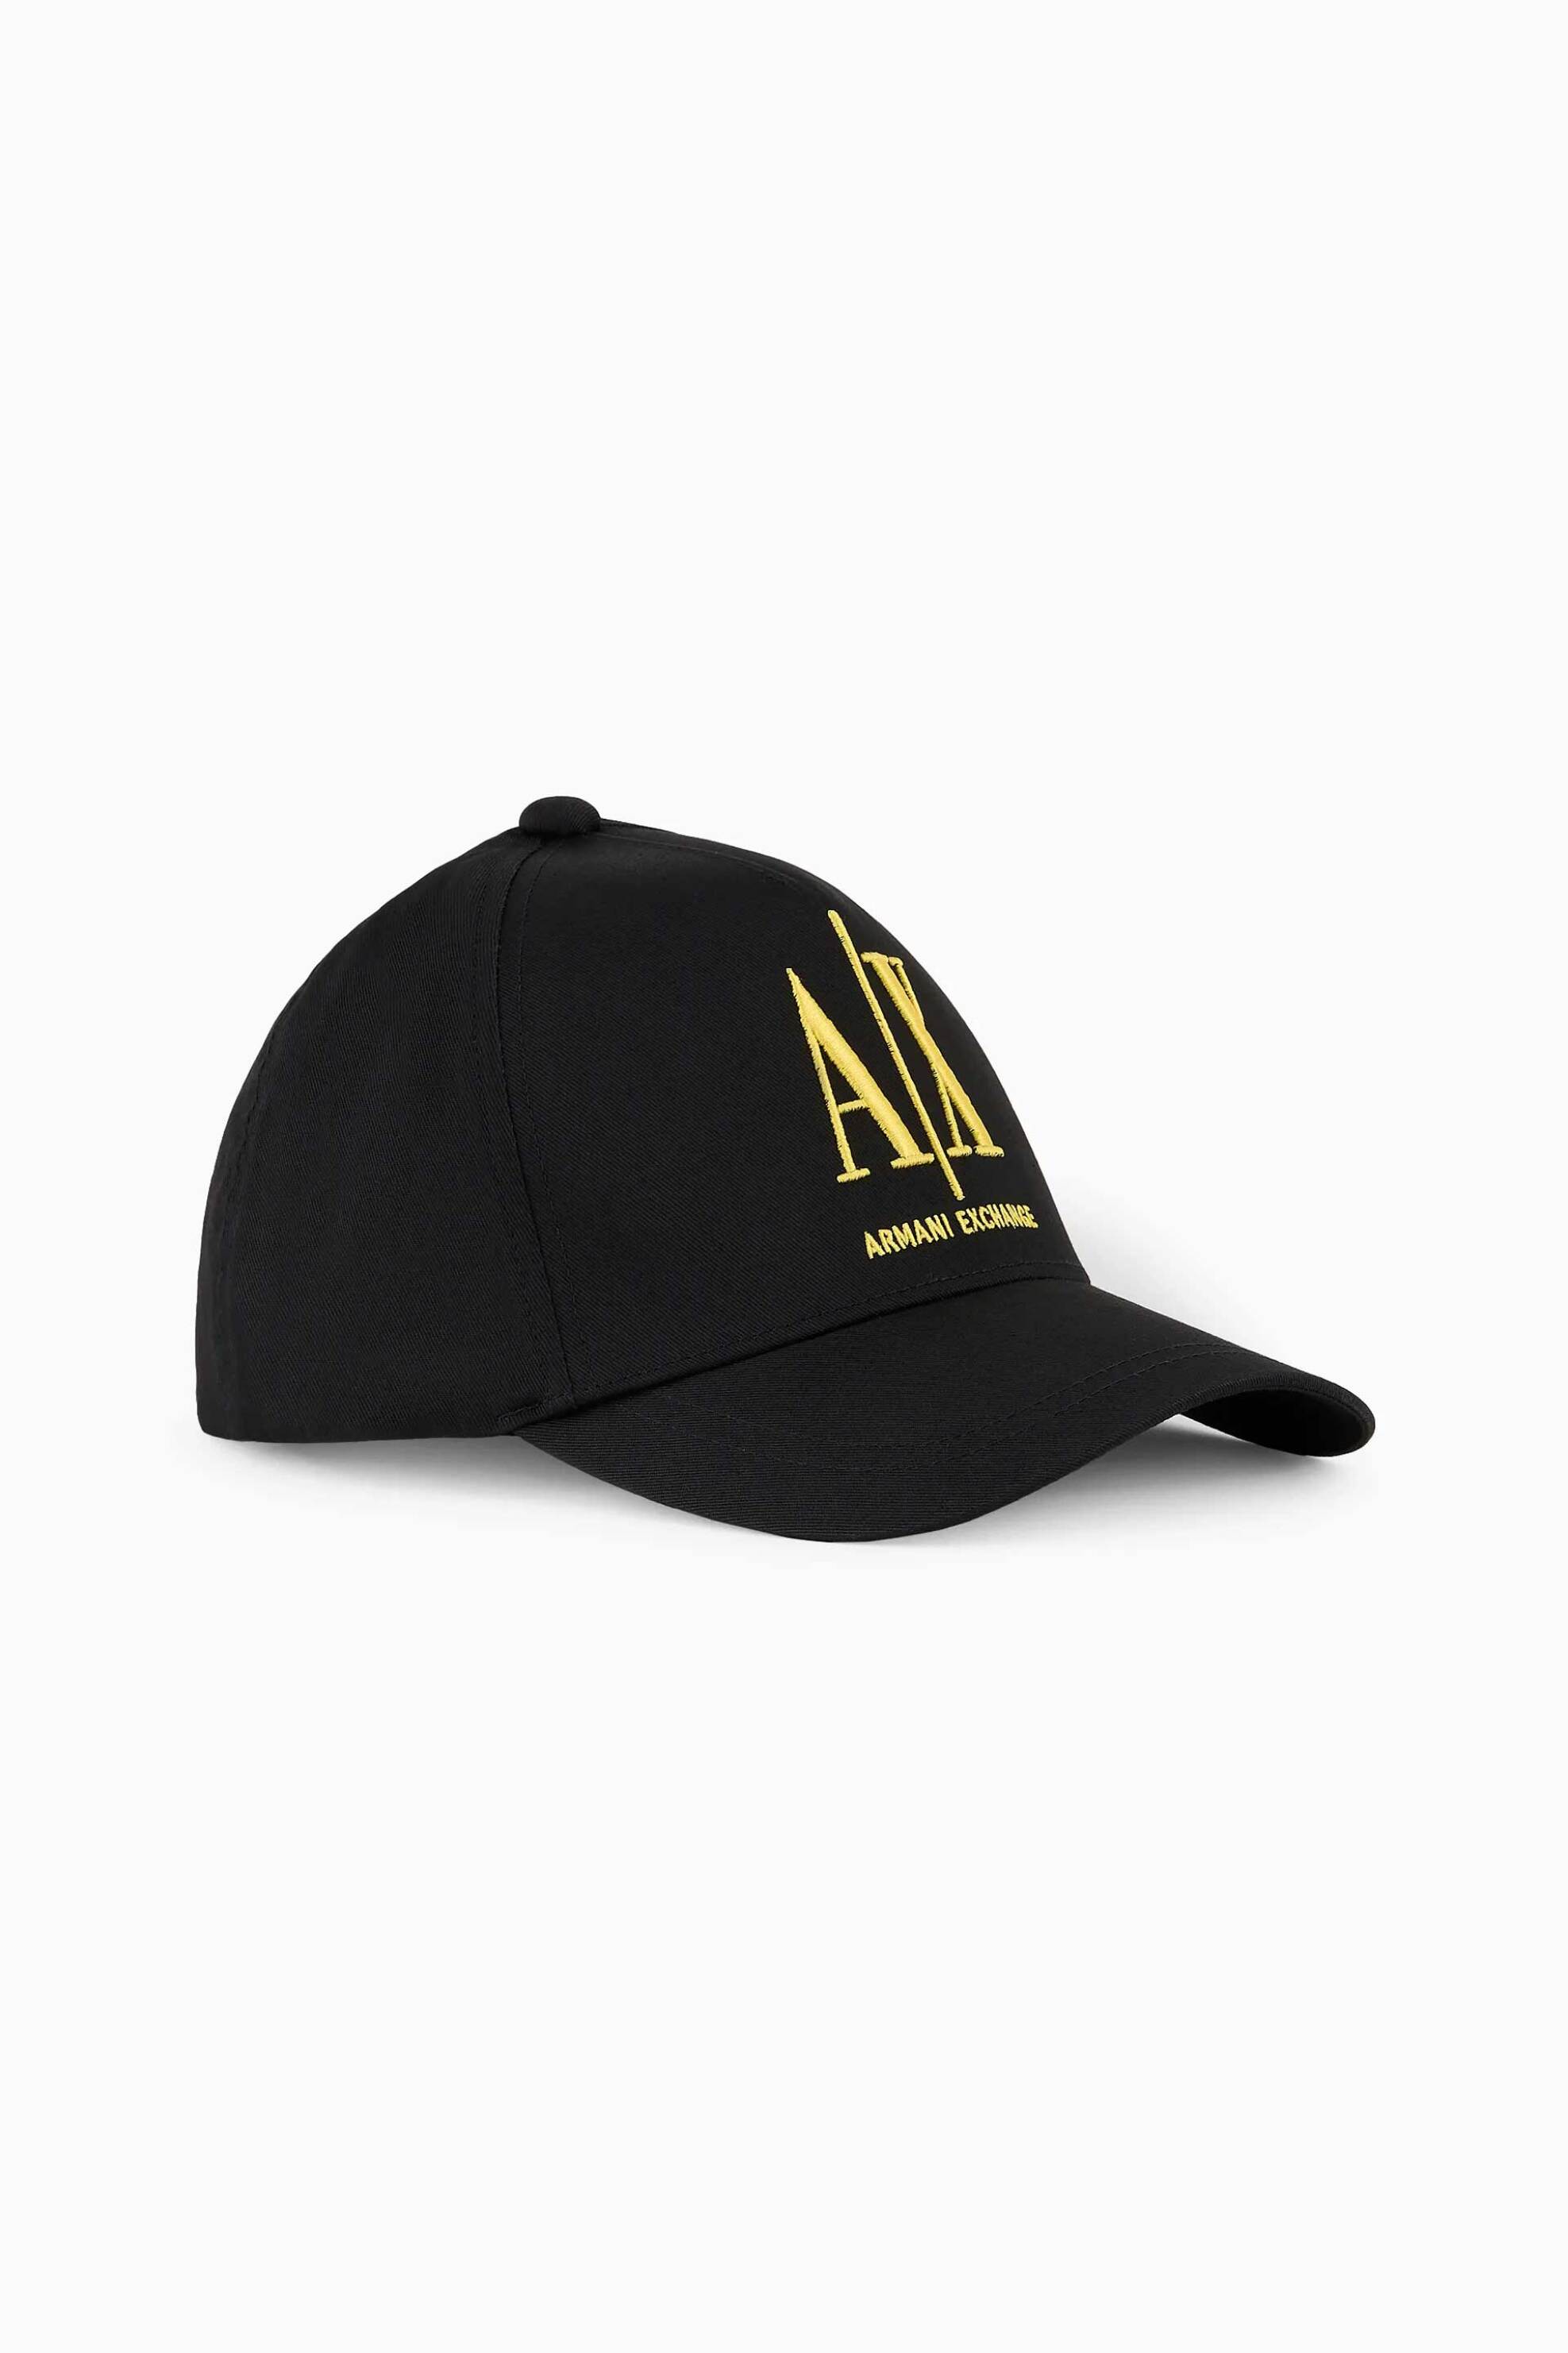 Ανδρική Μόδα > Ανδρικά Αξεσουάρ > Ανδρικά Καπέλα & Σκούφοι Armani Exchange ανδρικό καπέλο με κεντημένο λογότυπο - 954047CC811 Μαύρο